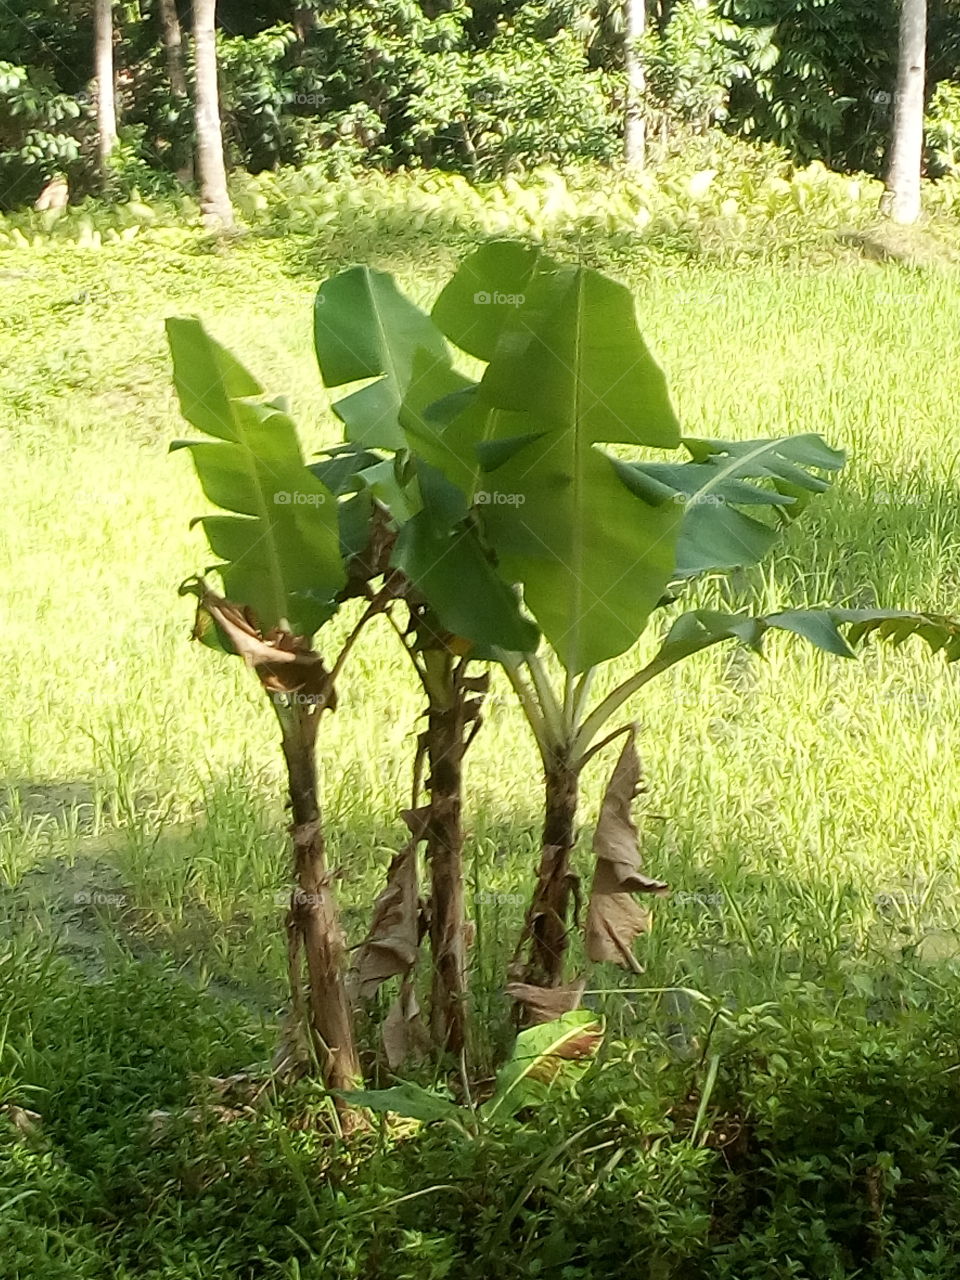 the small banana tree